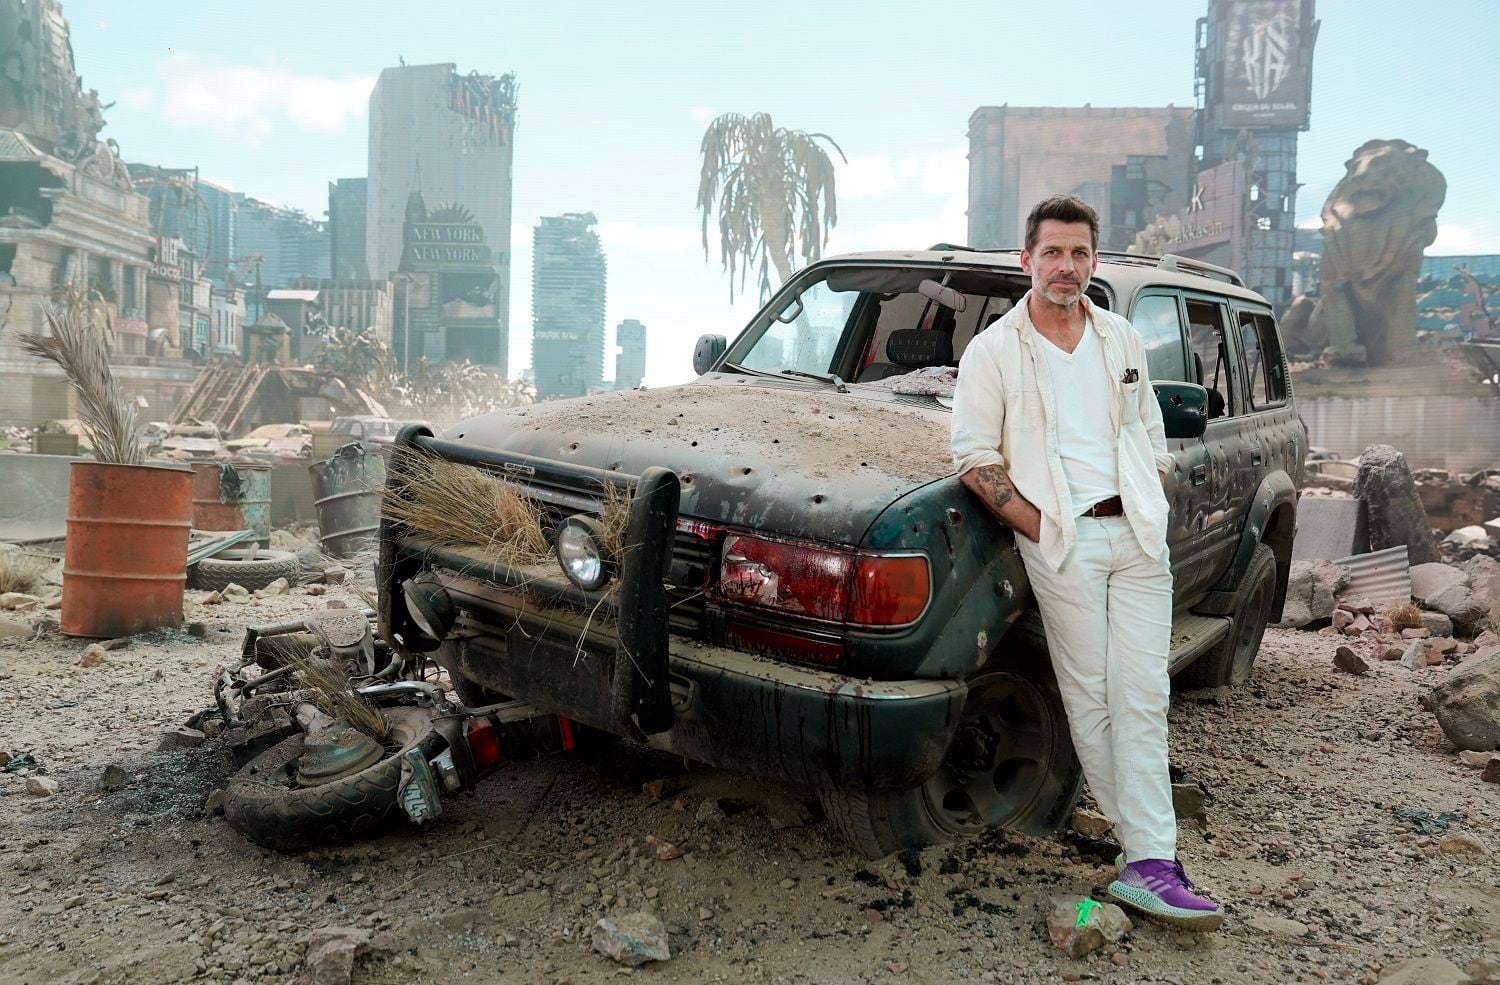 El director Zack Snyder posa para un retrato en un escenario virtual de una apocalíptica  Las Vegas para promover su película "Army of the Dead" el viernes 7 de mayo de 2021 en El Segundo, California. (Foto AP/Chris Pizzello)